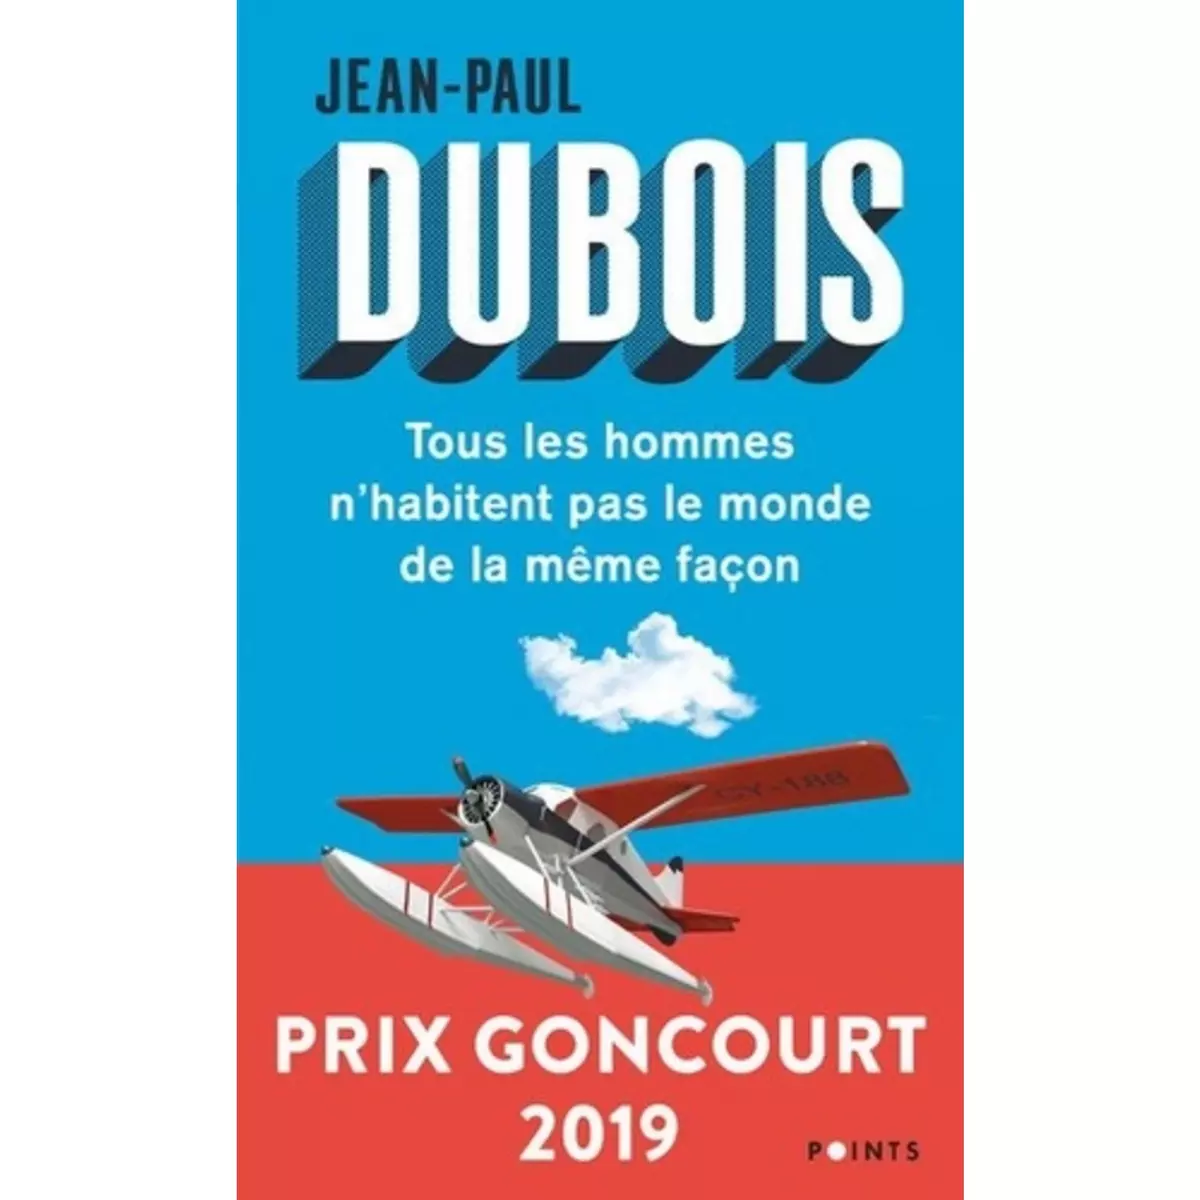  TOUS LES HOMMES N'HABITENT PAS LE MONDE DE LA MEME FACON, Dubois Jean-Paul